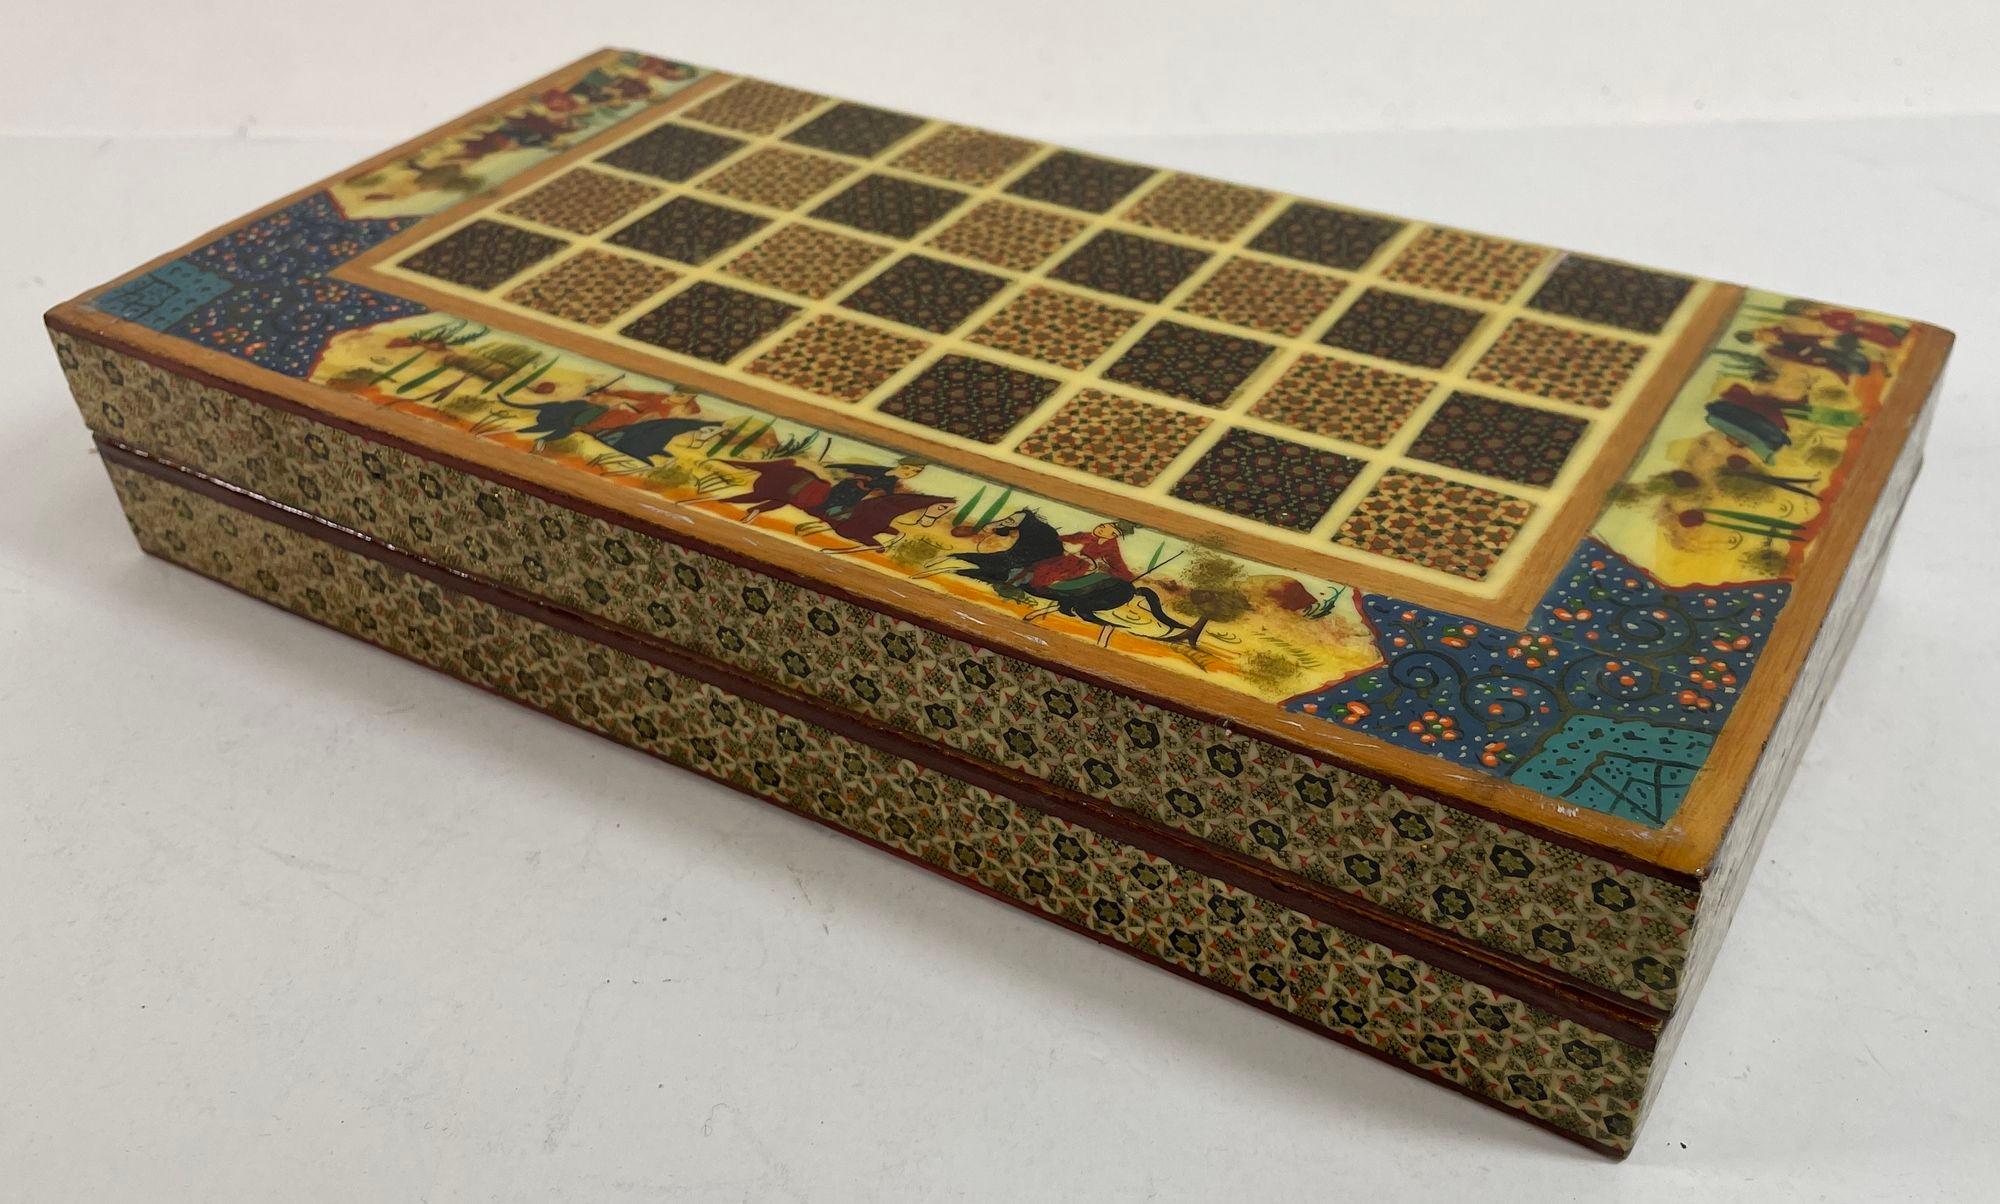 Boîte de jeu d'échecs vintage en micro mosaïque persane.
Coffret de jeu d'échecs de style persan incrusté à la main.
Magnifique échiquier Khatam de style mauresque du Moyen-Orient, fabriqué à la main et recouvert d'une très délicate marqueterie de